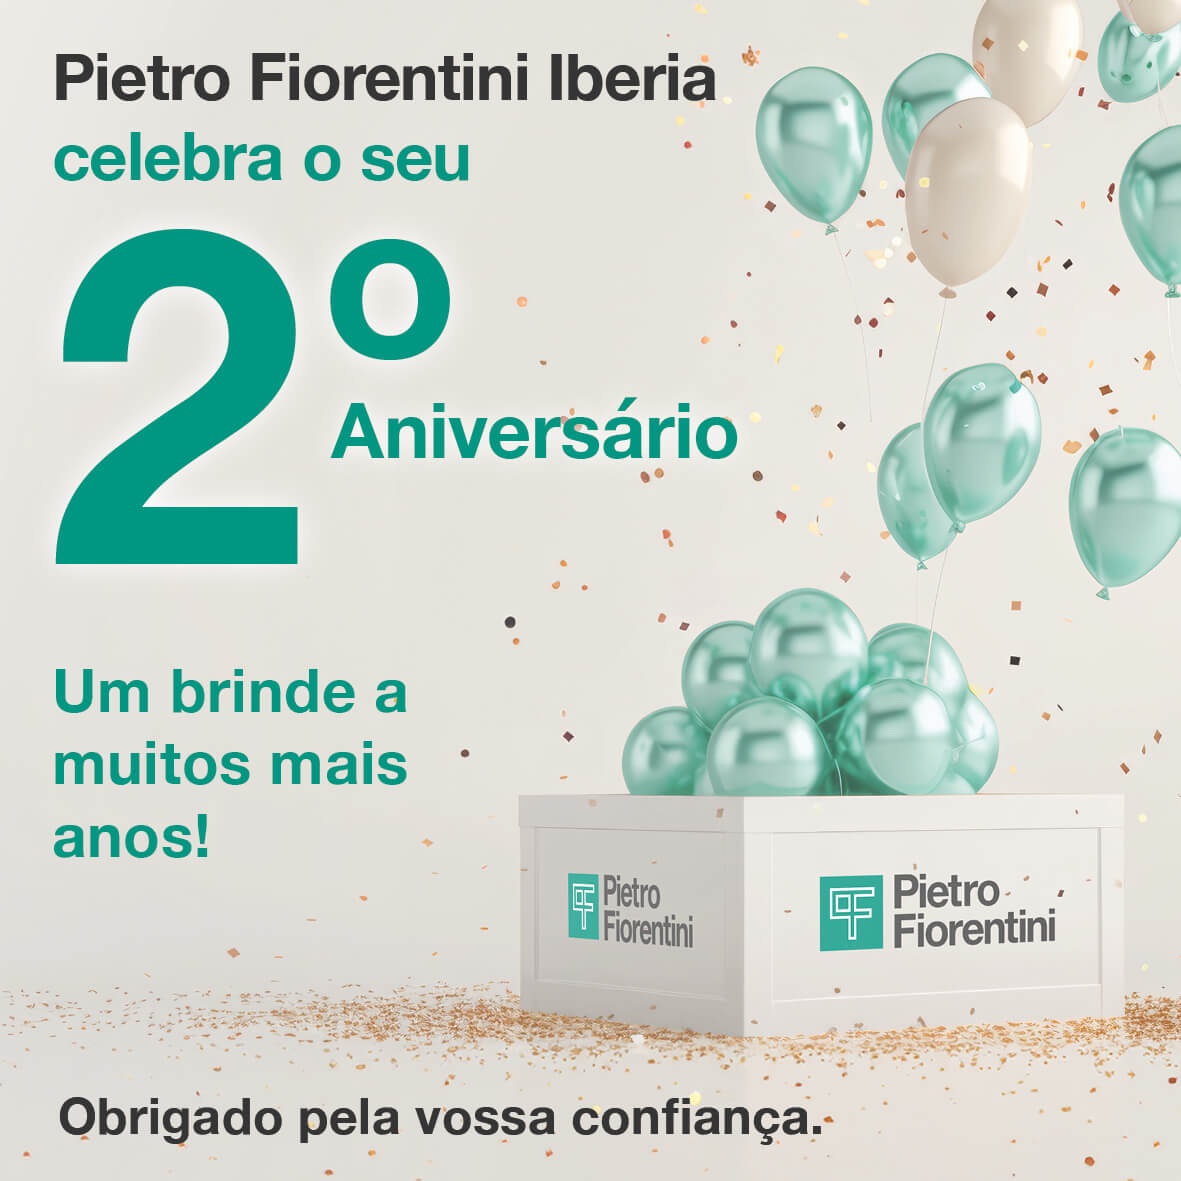 Pietro Fiorentini Iberia celebra o seu 2º aniversário